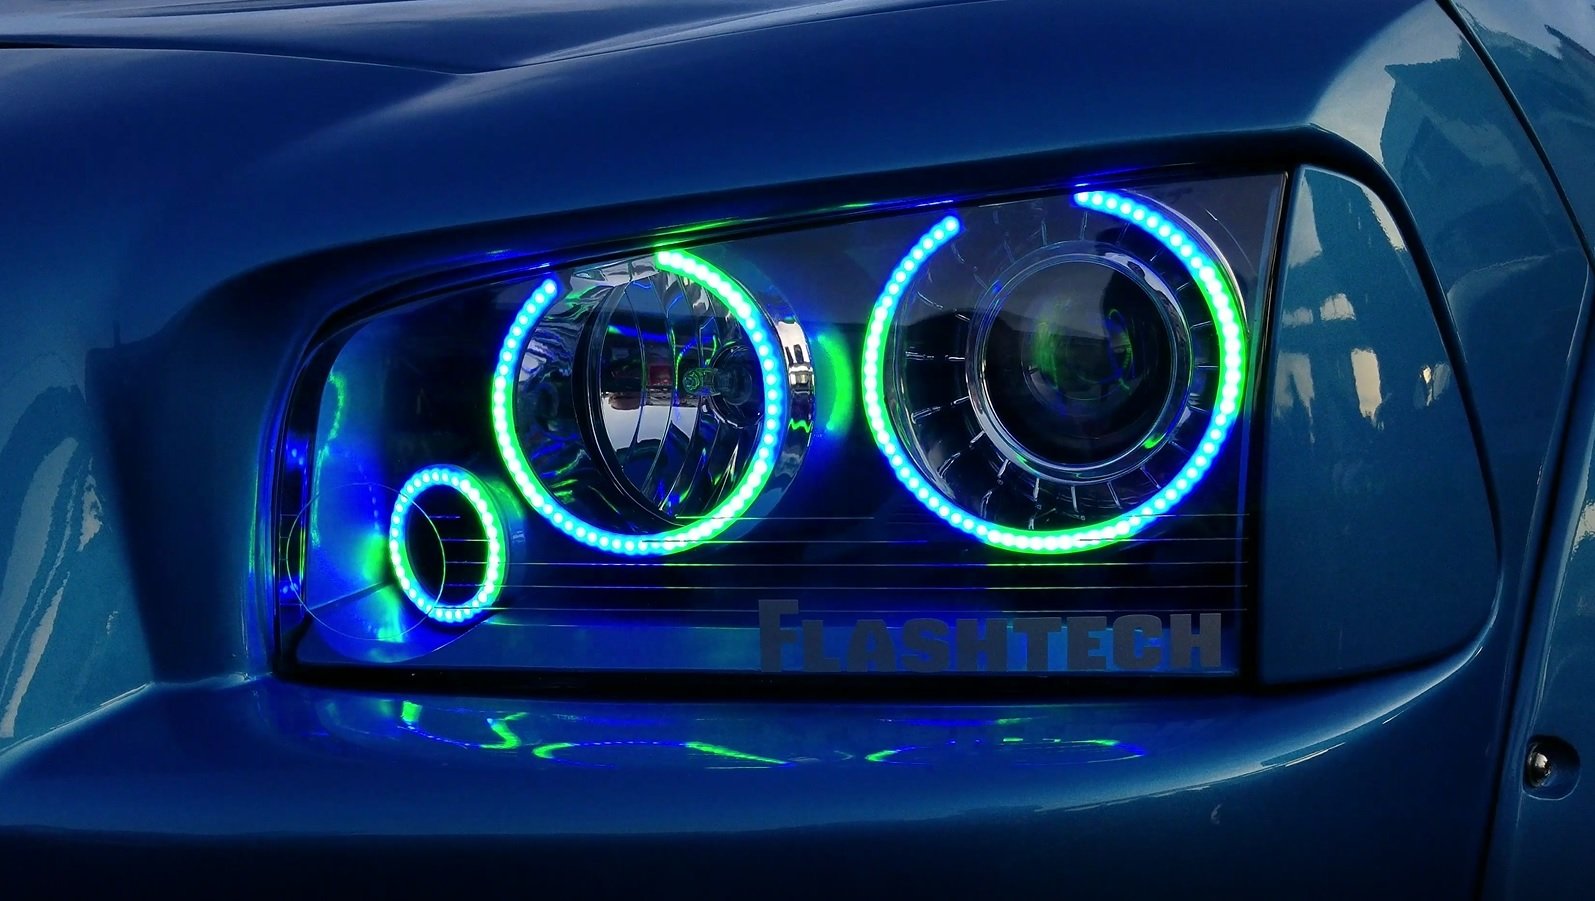 Chrysler-Sebring-2008, 2009, 2010-LED-Halo-Fog Lights-ColorChase-No Remote-CH-SB0810-CCF